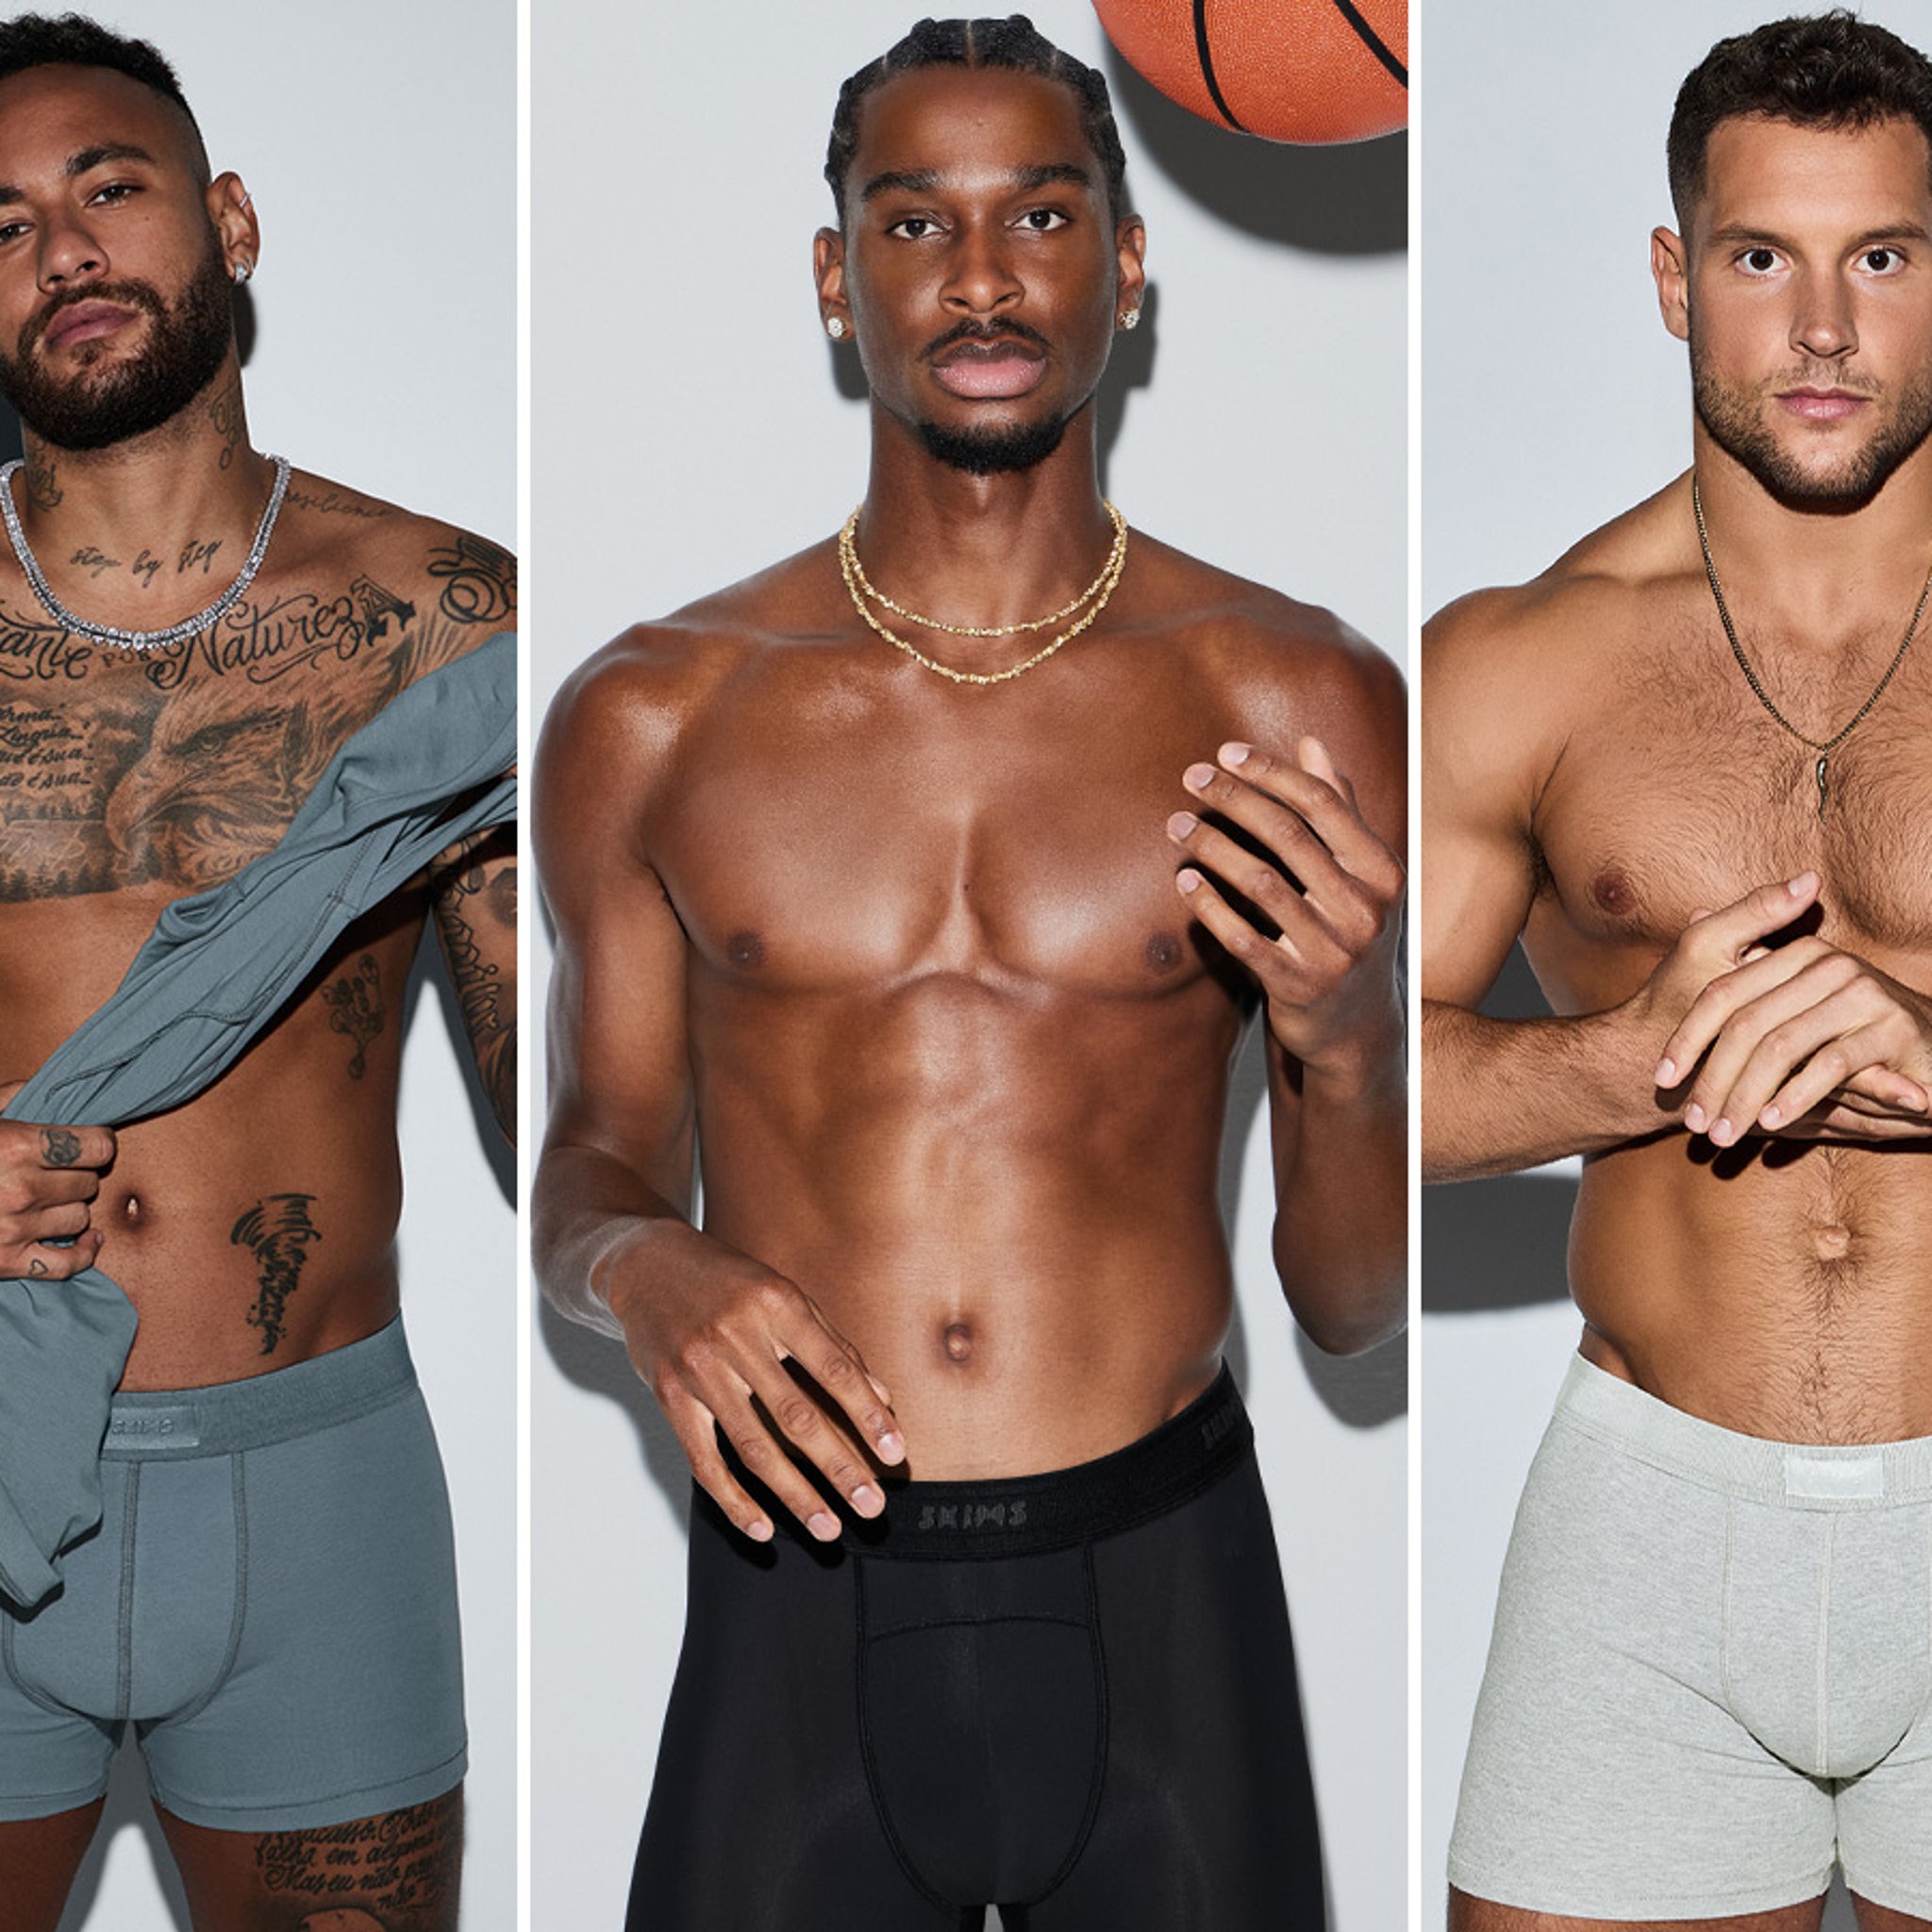 Shop Skims Mens: Kim Kardashian's Line Of Men's Underwear, 55% OFF